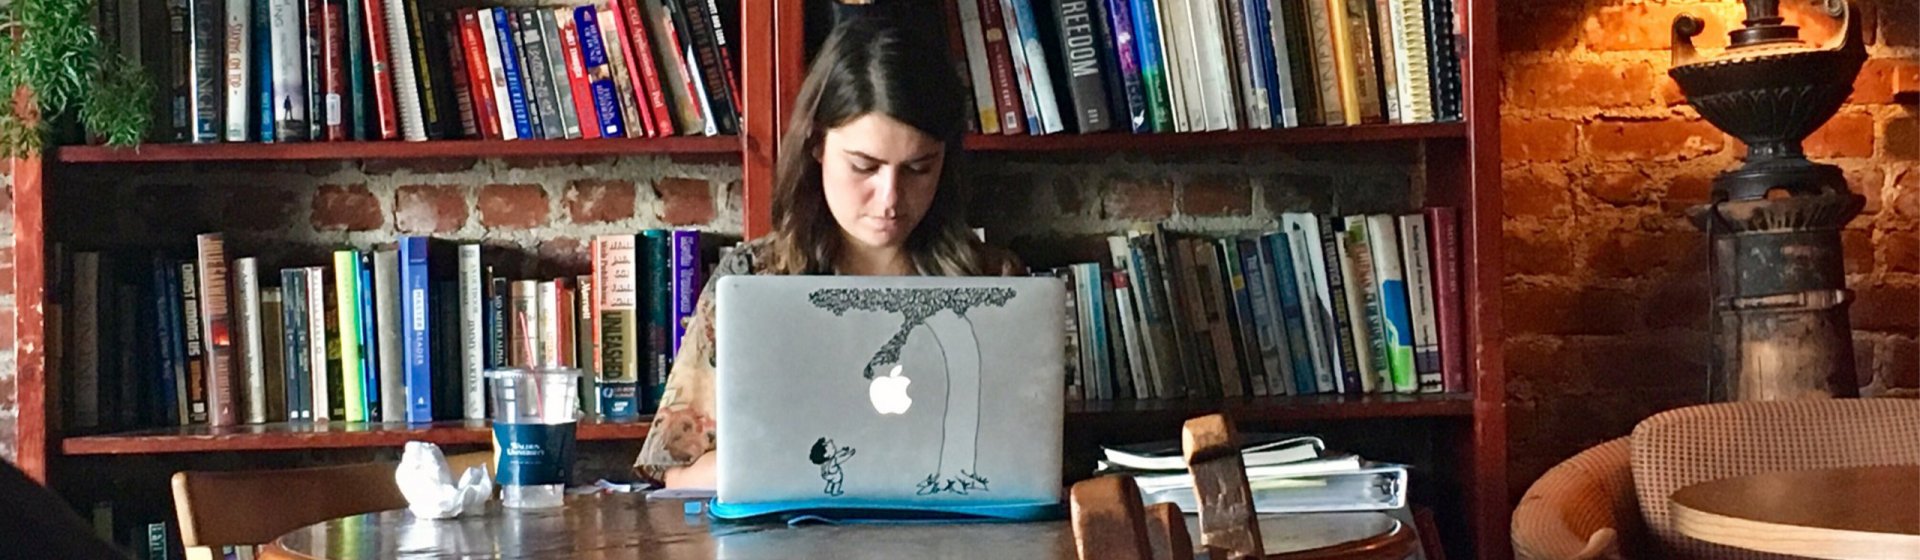 Frau mit Laptop vor Bücherregal